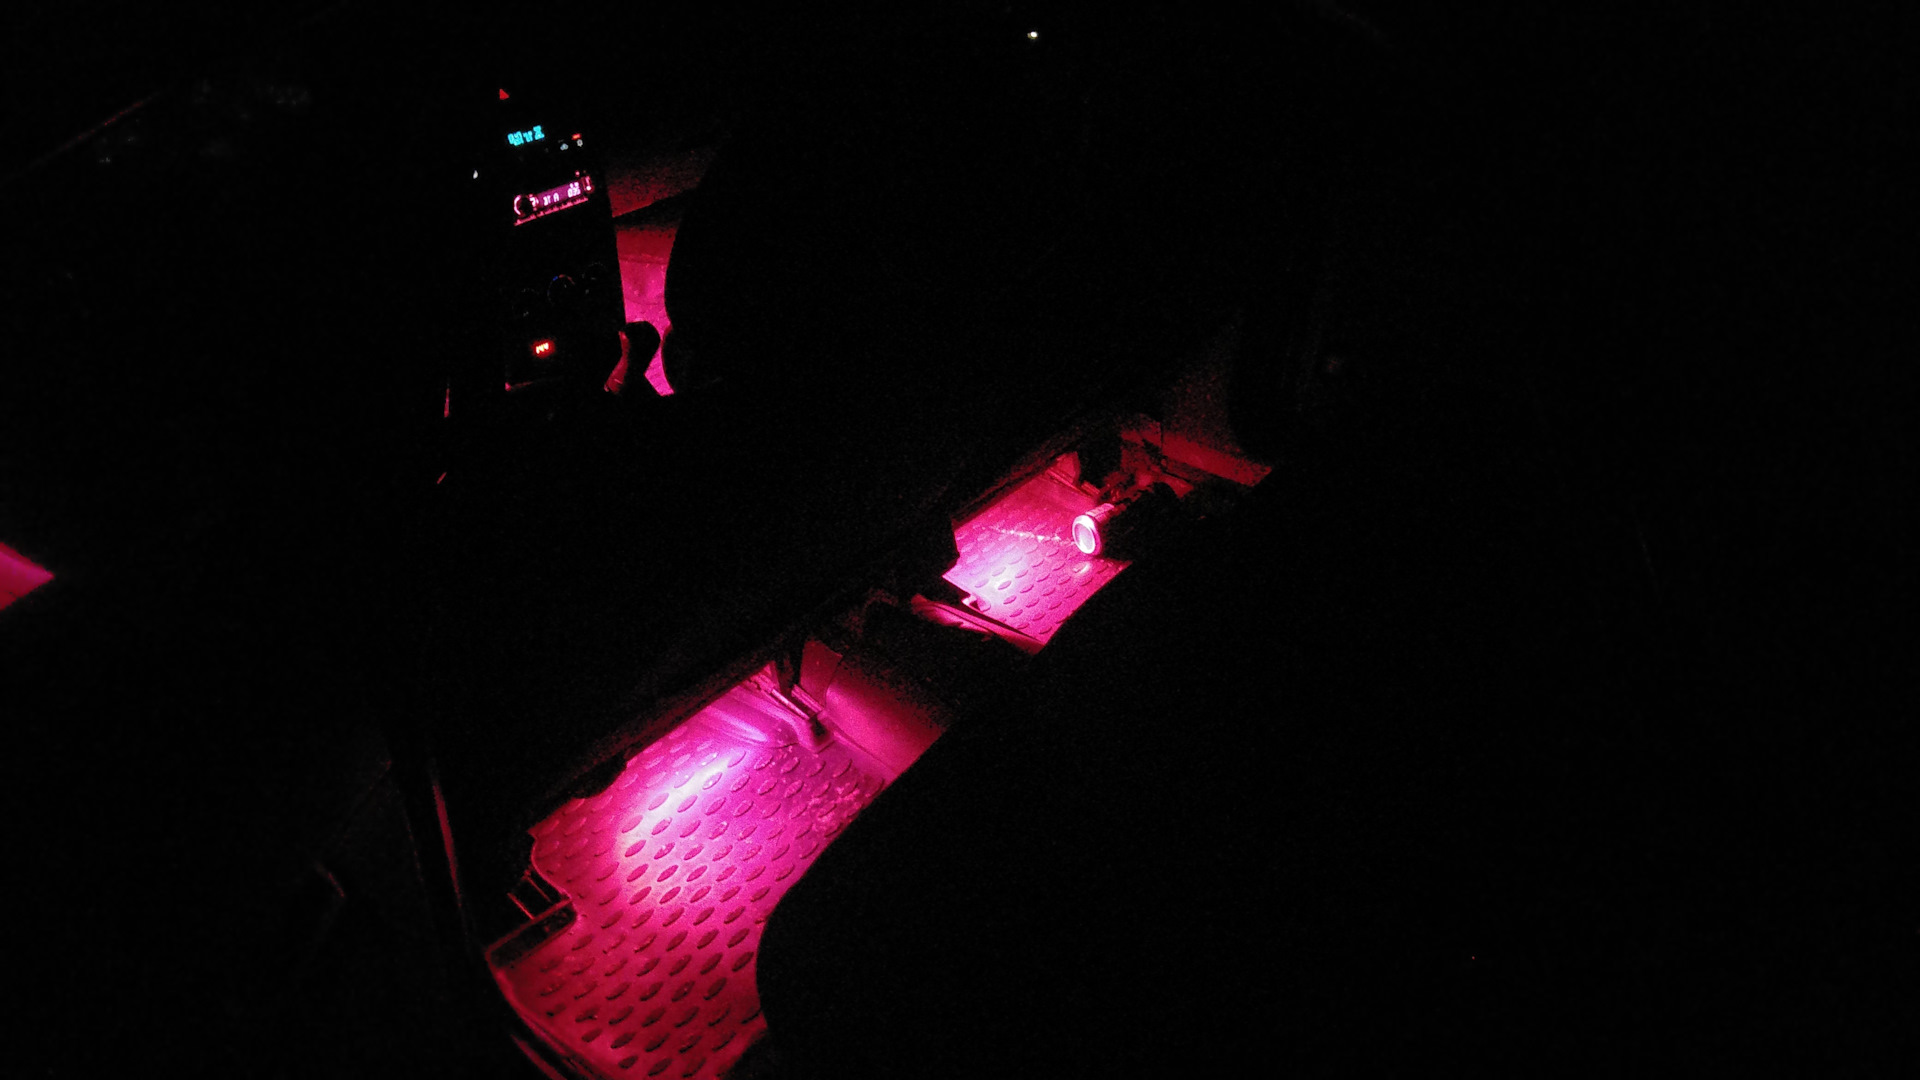 Подсветка мазда сх5. Подсветка ног ВАЗ 2109. Подсветка ног в зеркала Мазда сх5. Подсветка ног Mazda Demio 2008. Подсветка ног Приора 1.